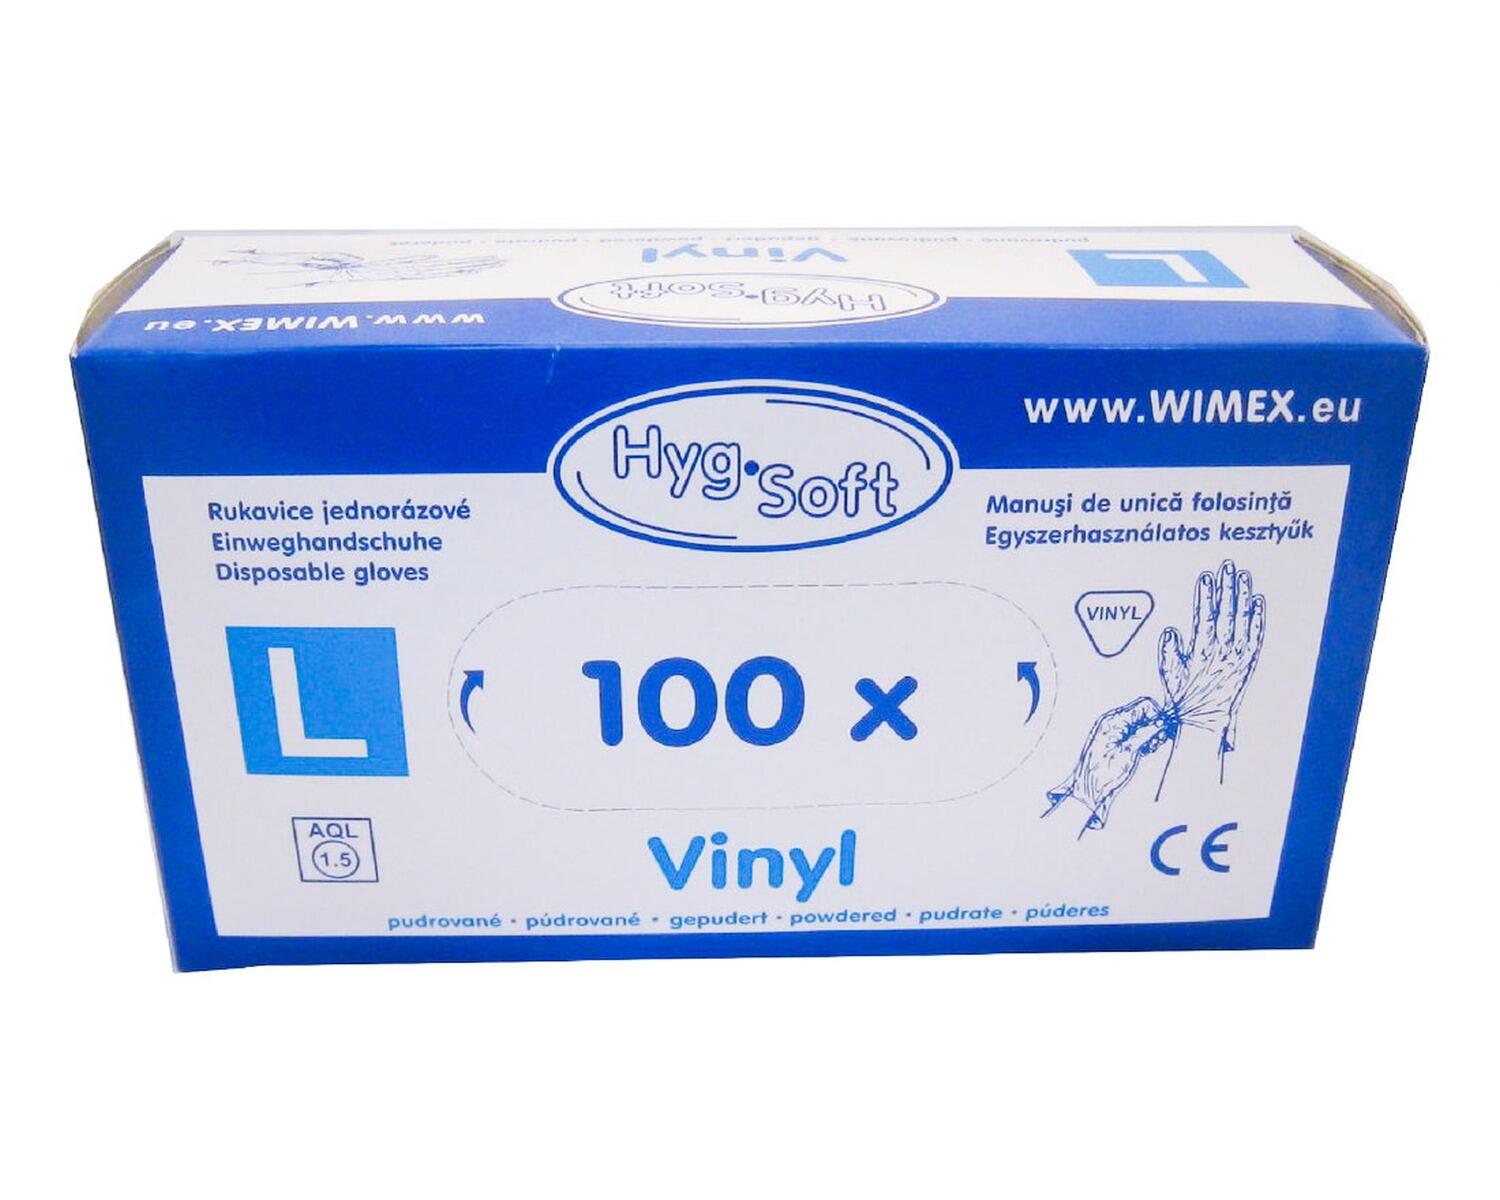 Vinyl Einweghandschuhe Vinylhandschuhe gepudert Gre L, 100 Stk.